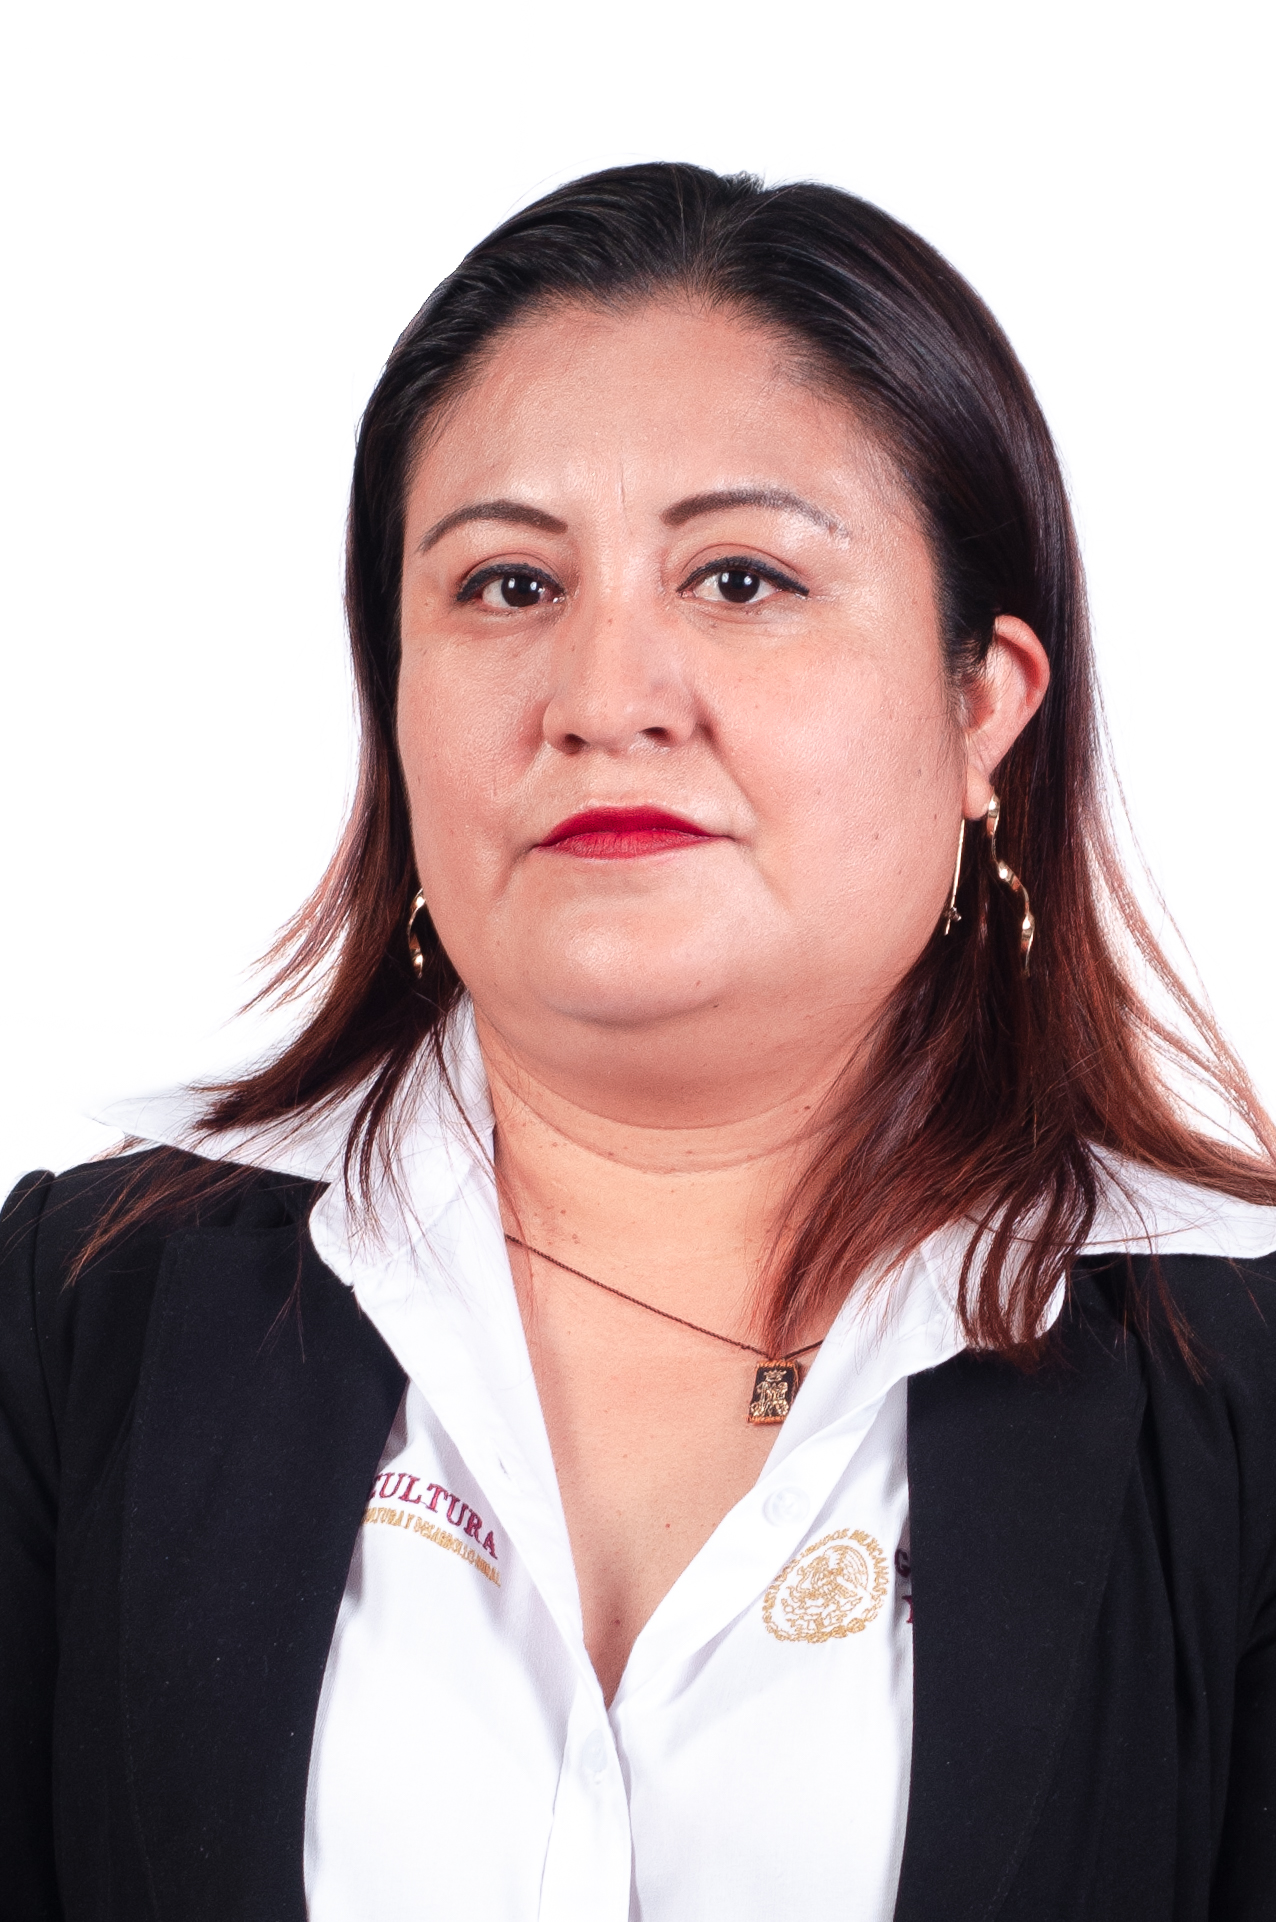 Carolina Ojeda Martínez